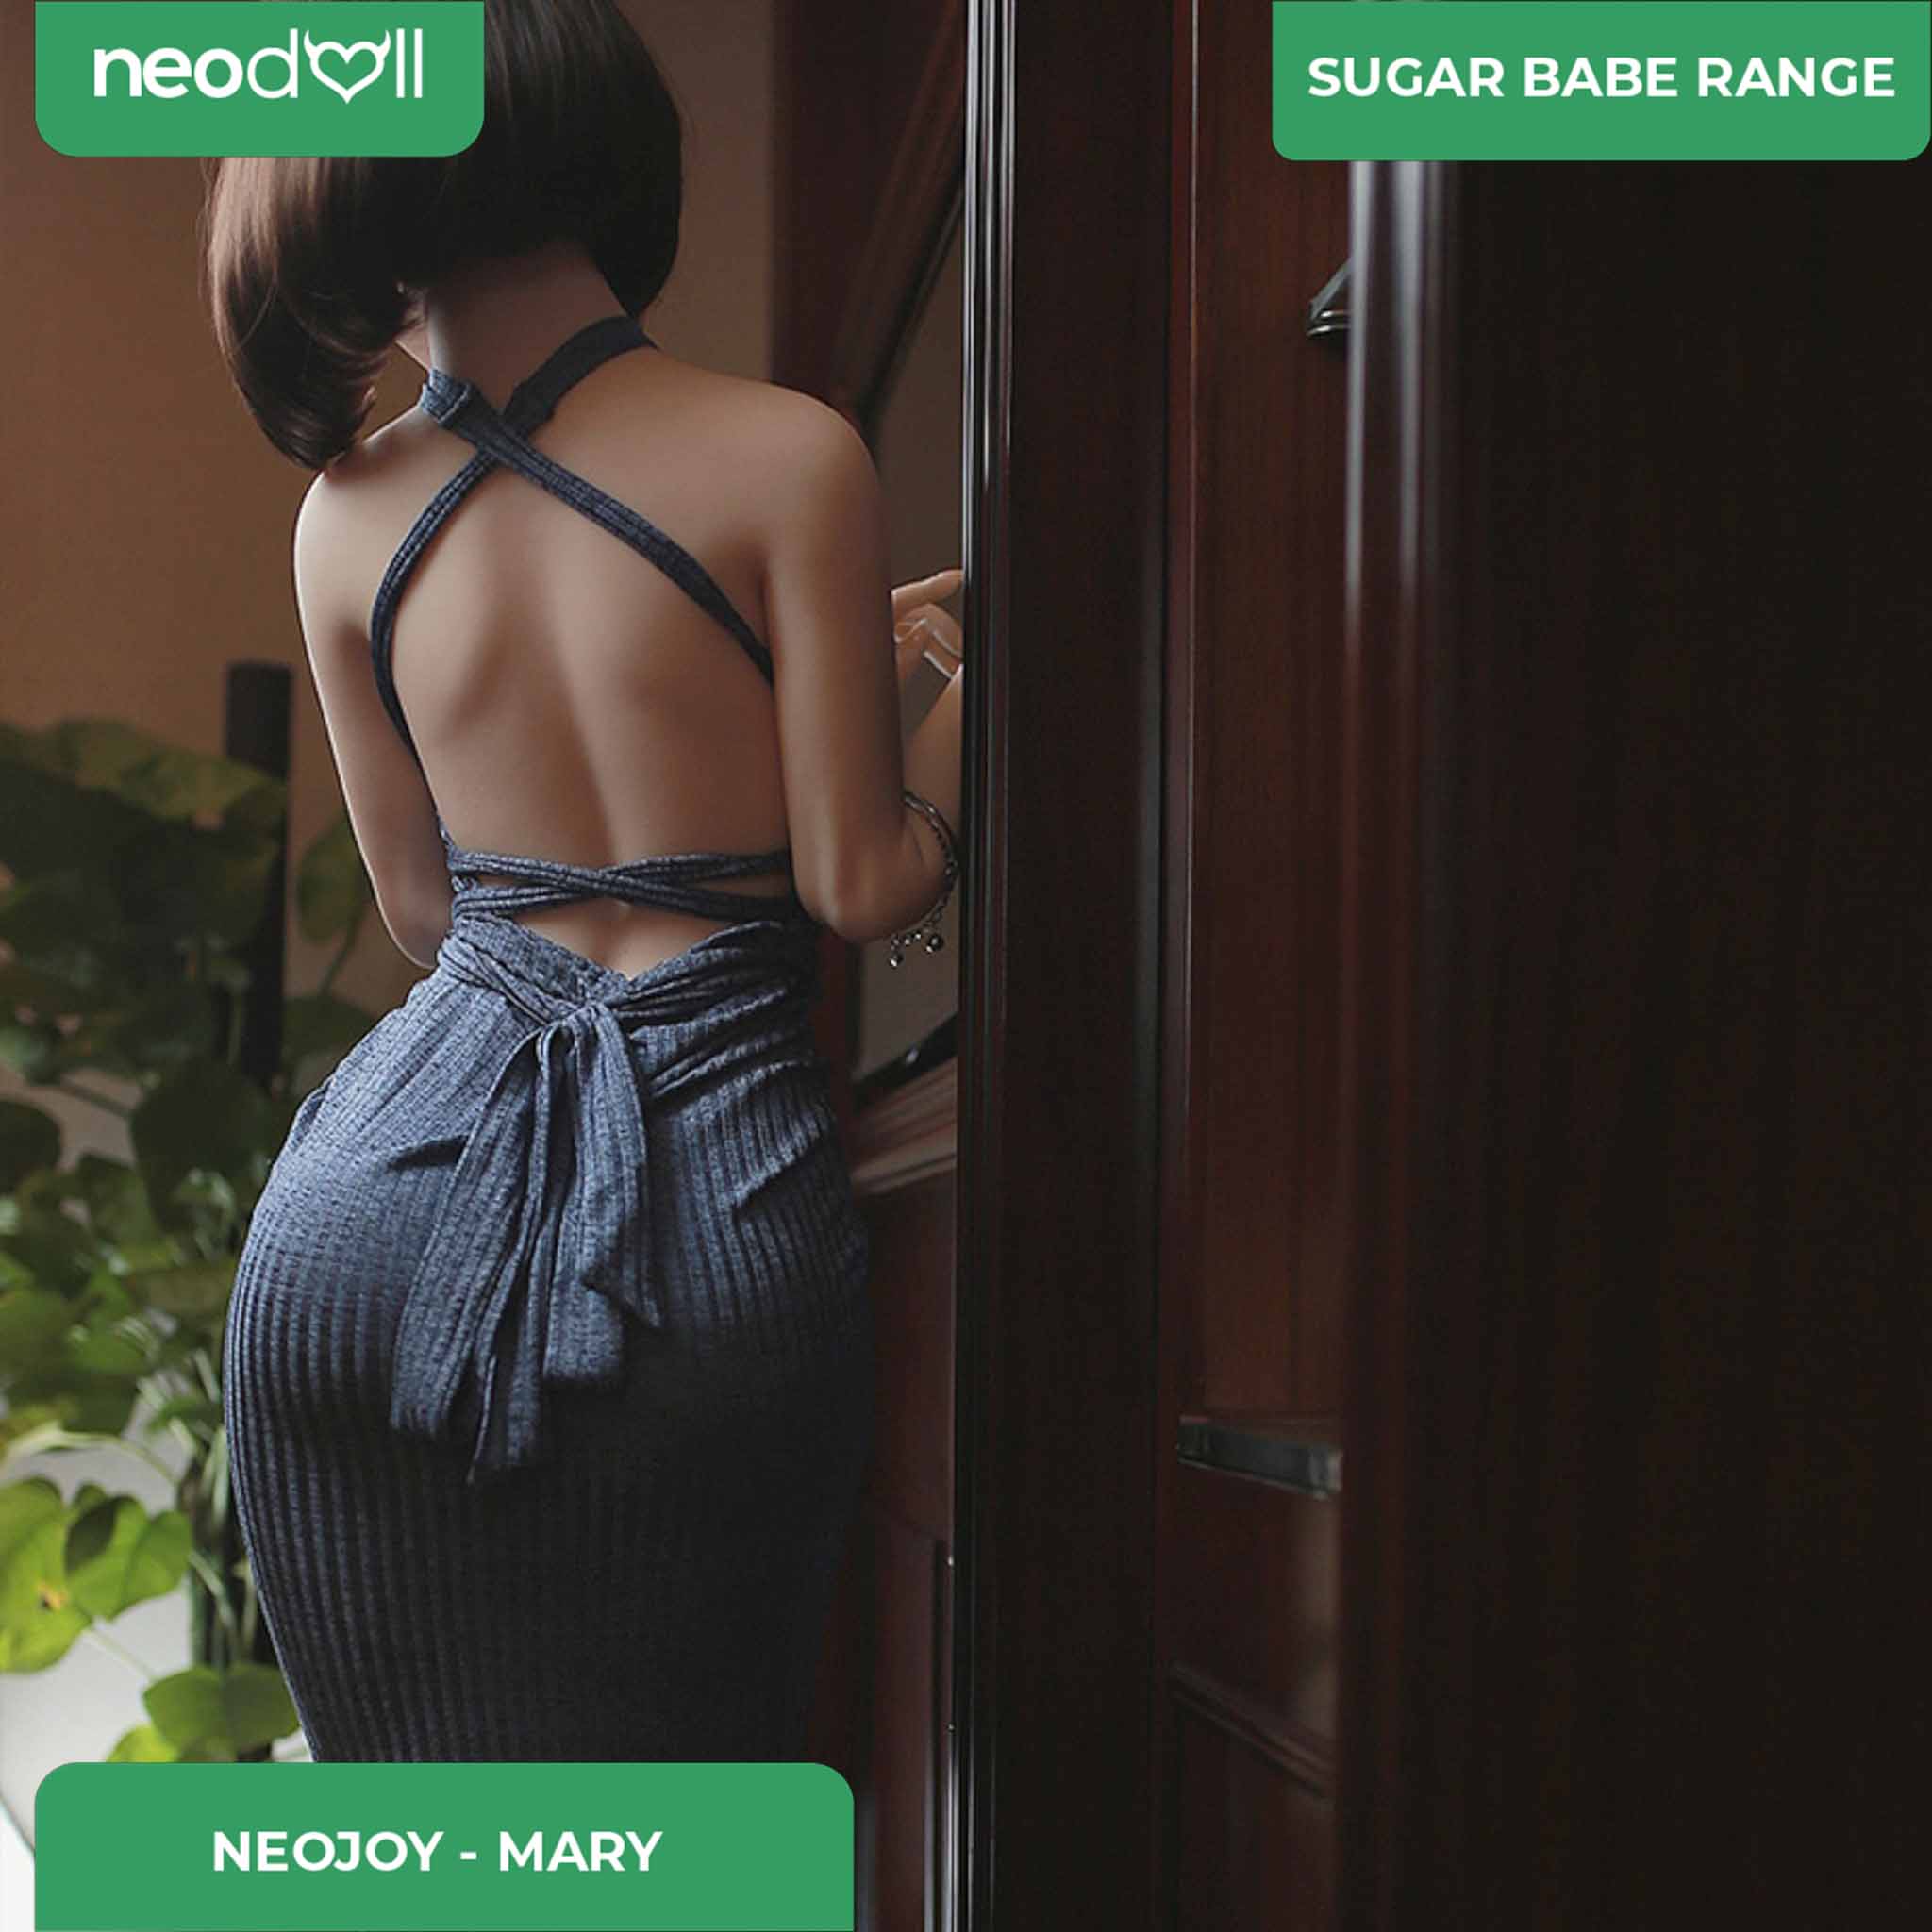 Neodoll Sugar Babe - Mary - Realistic Sex Doll - Gel Breast - 170 - White